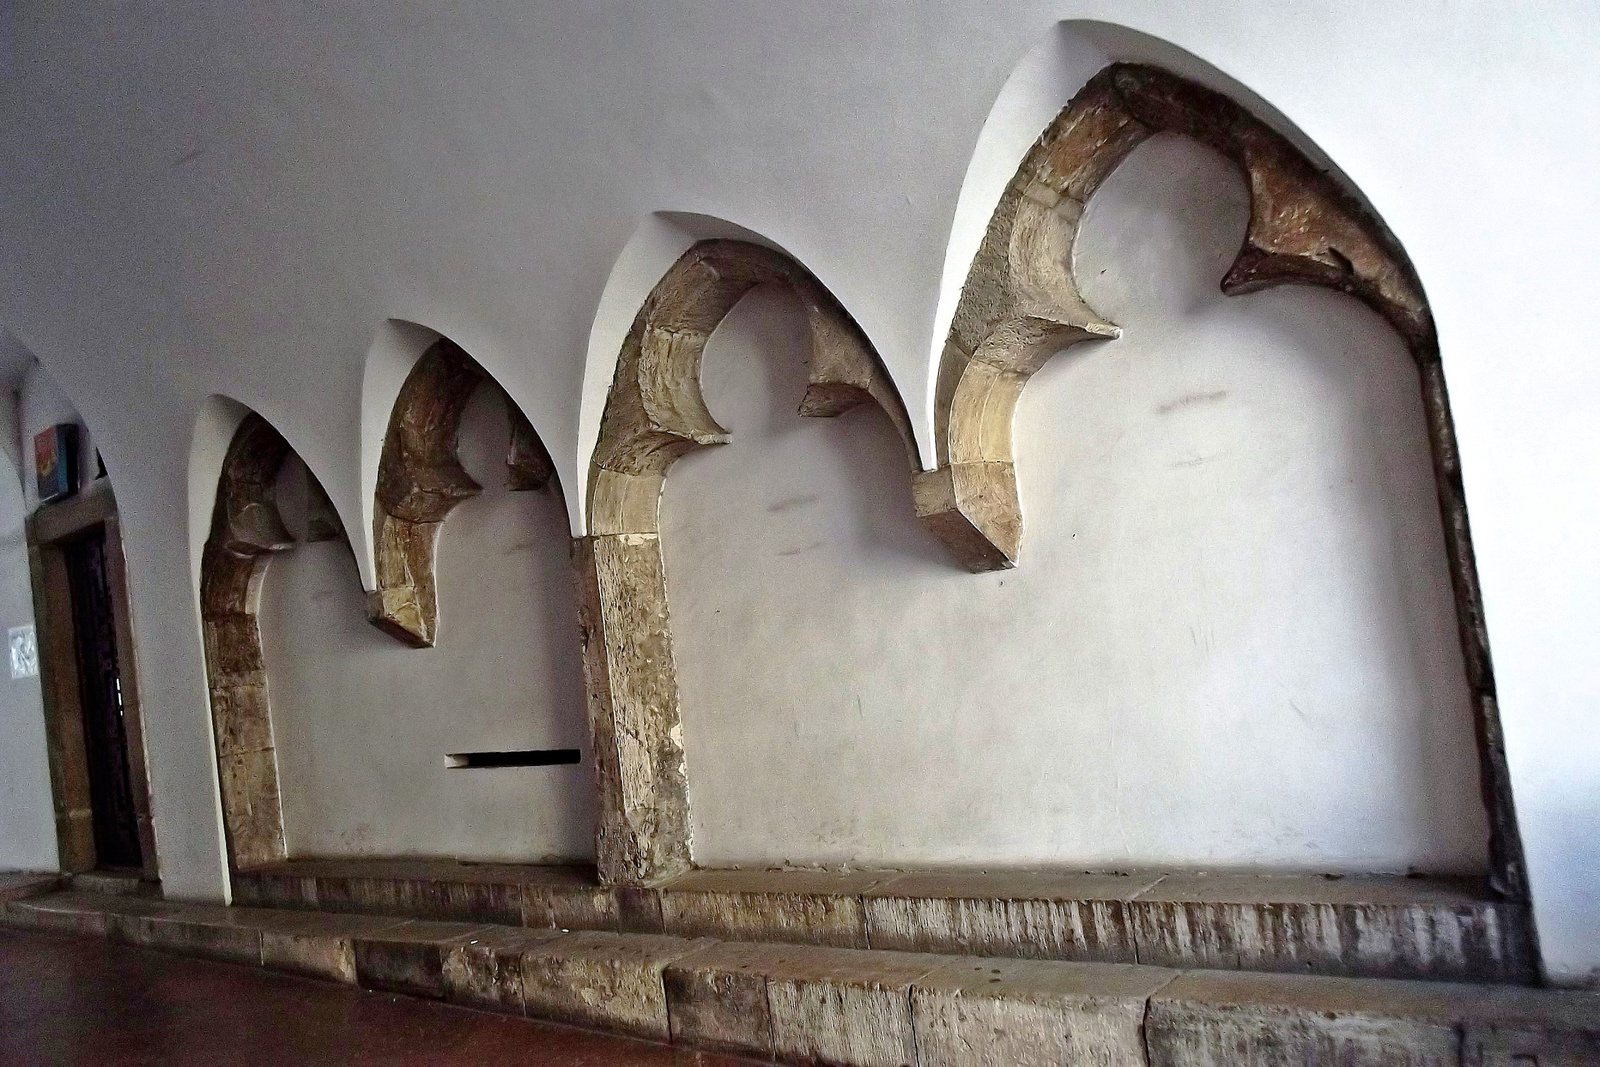 középkori ülőfülkék